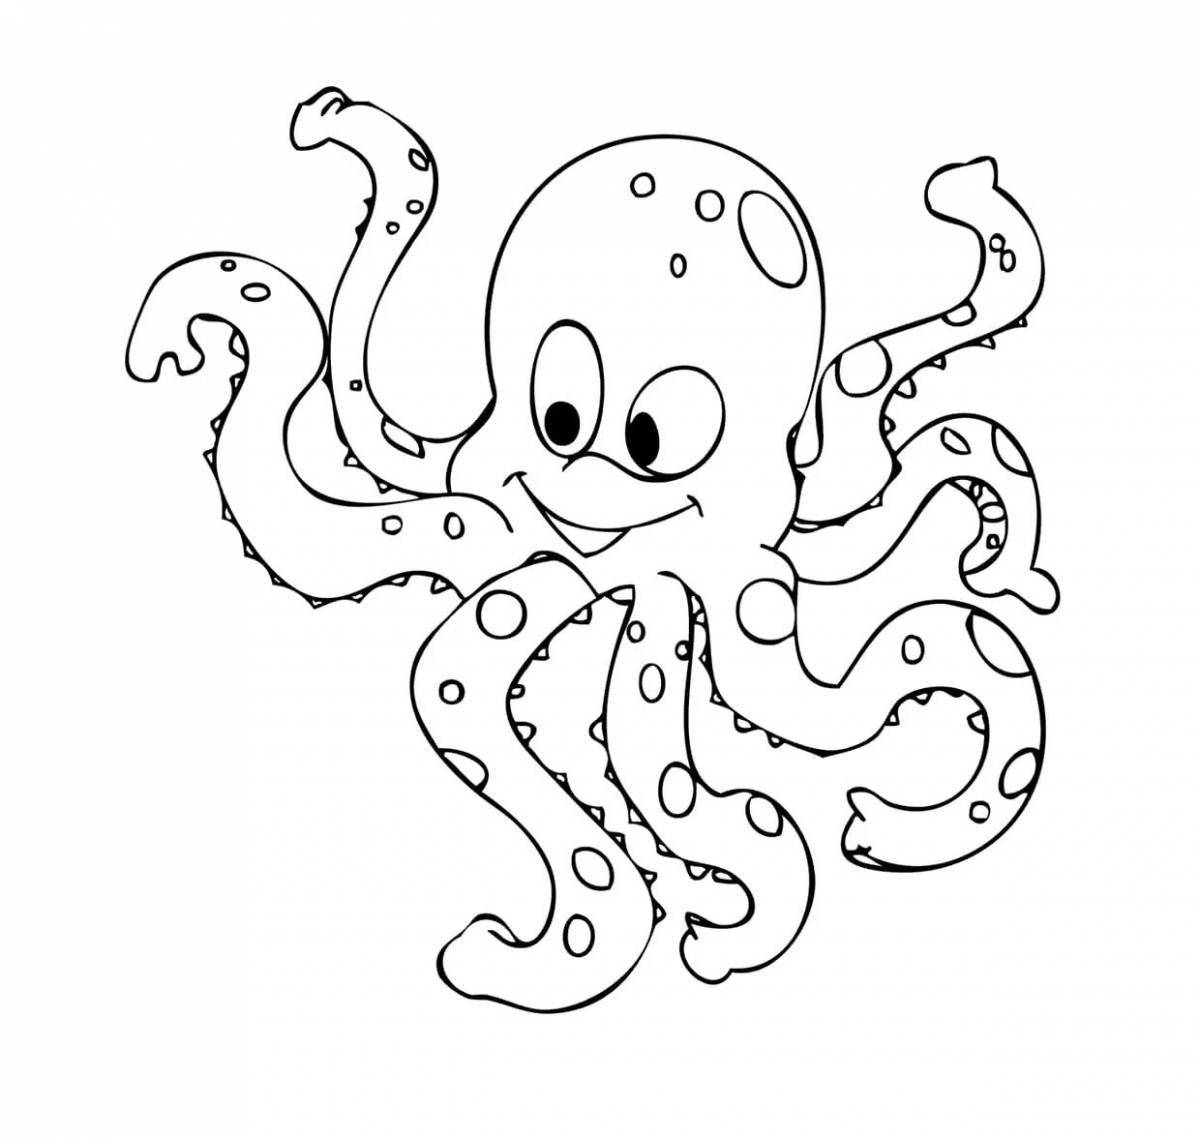 Attractive octopus coloring book